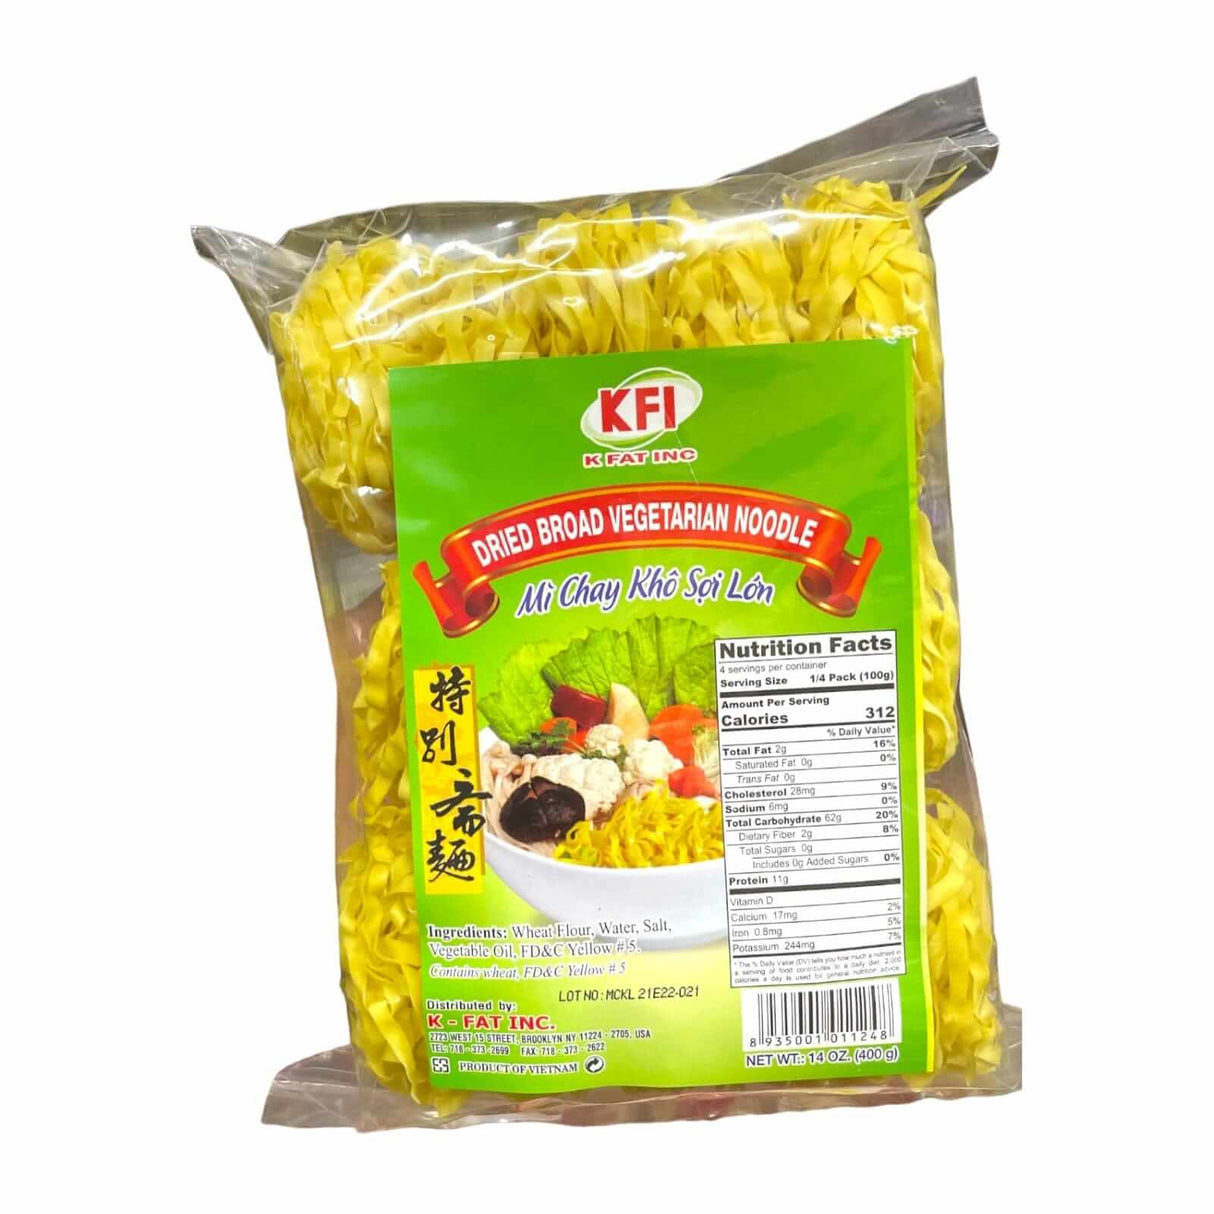 KFI Dried Broad Vegetarian Noodle